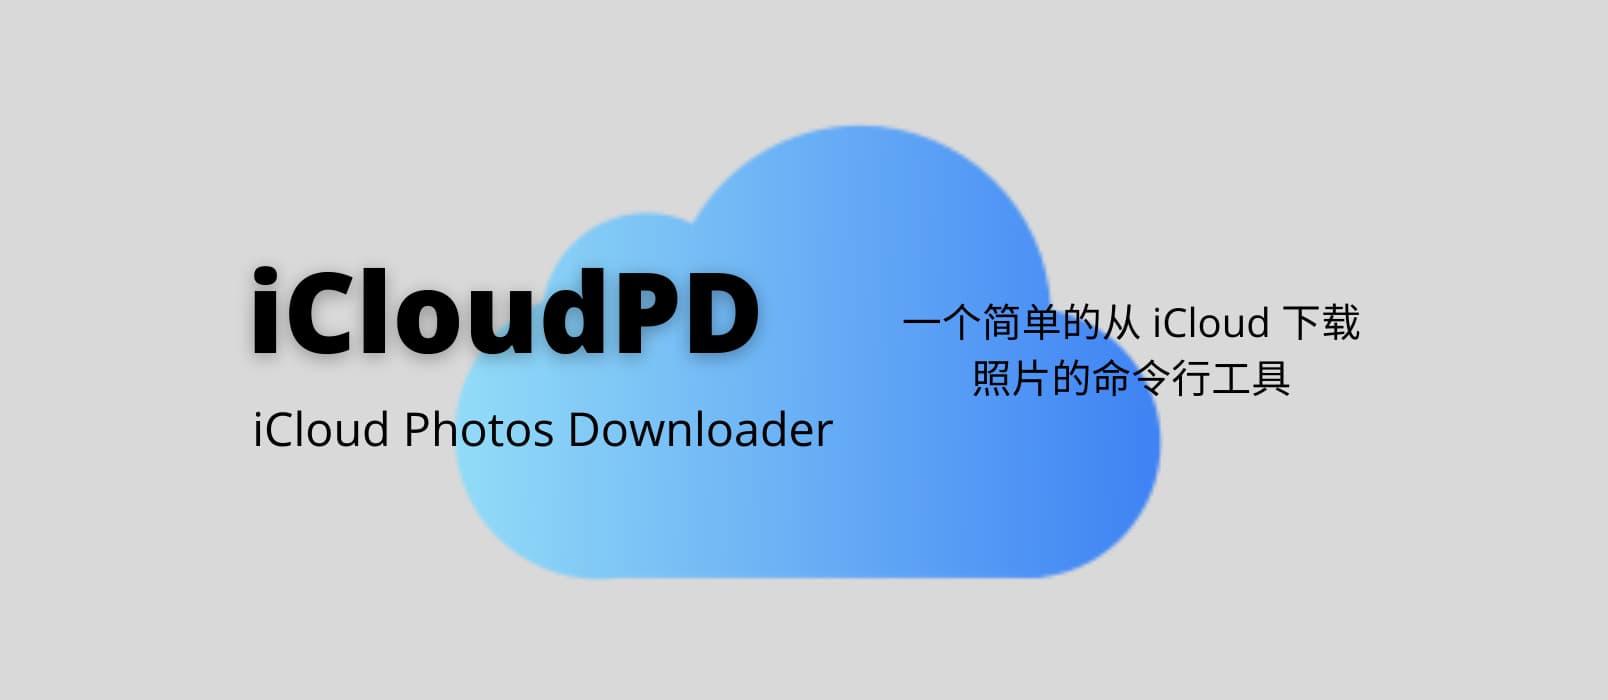 iCloudPD - 一个简单的从 iCloud 下载照片的命令行工具